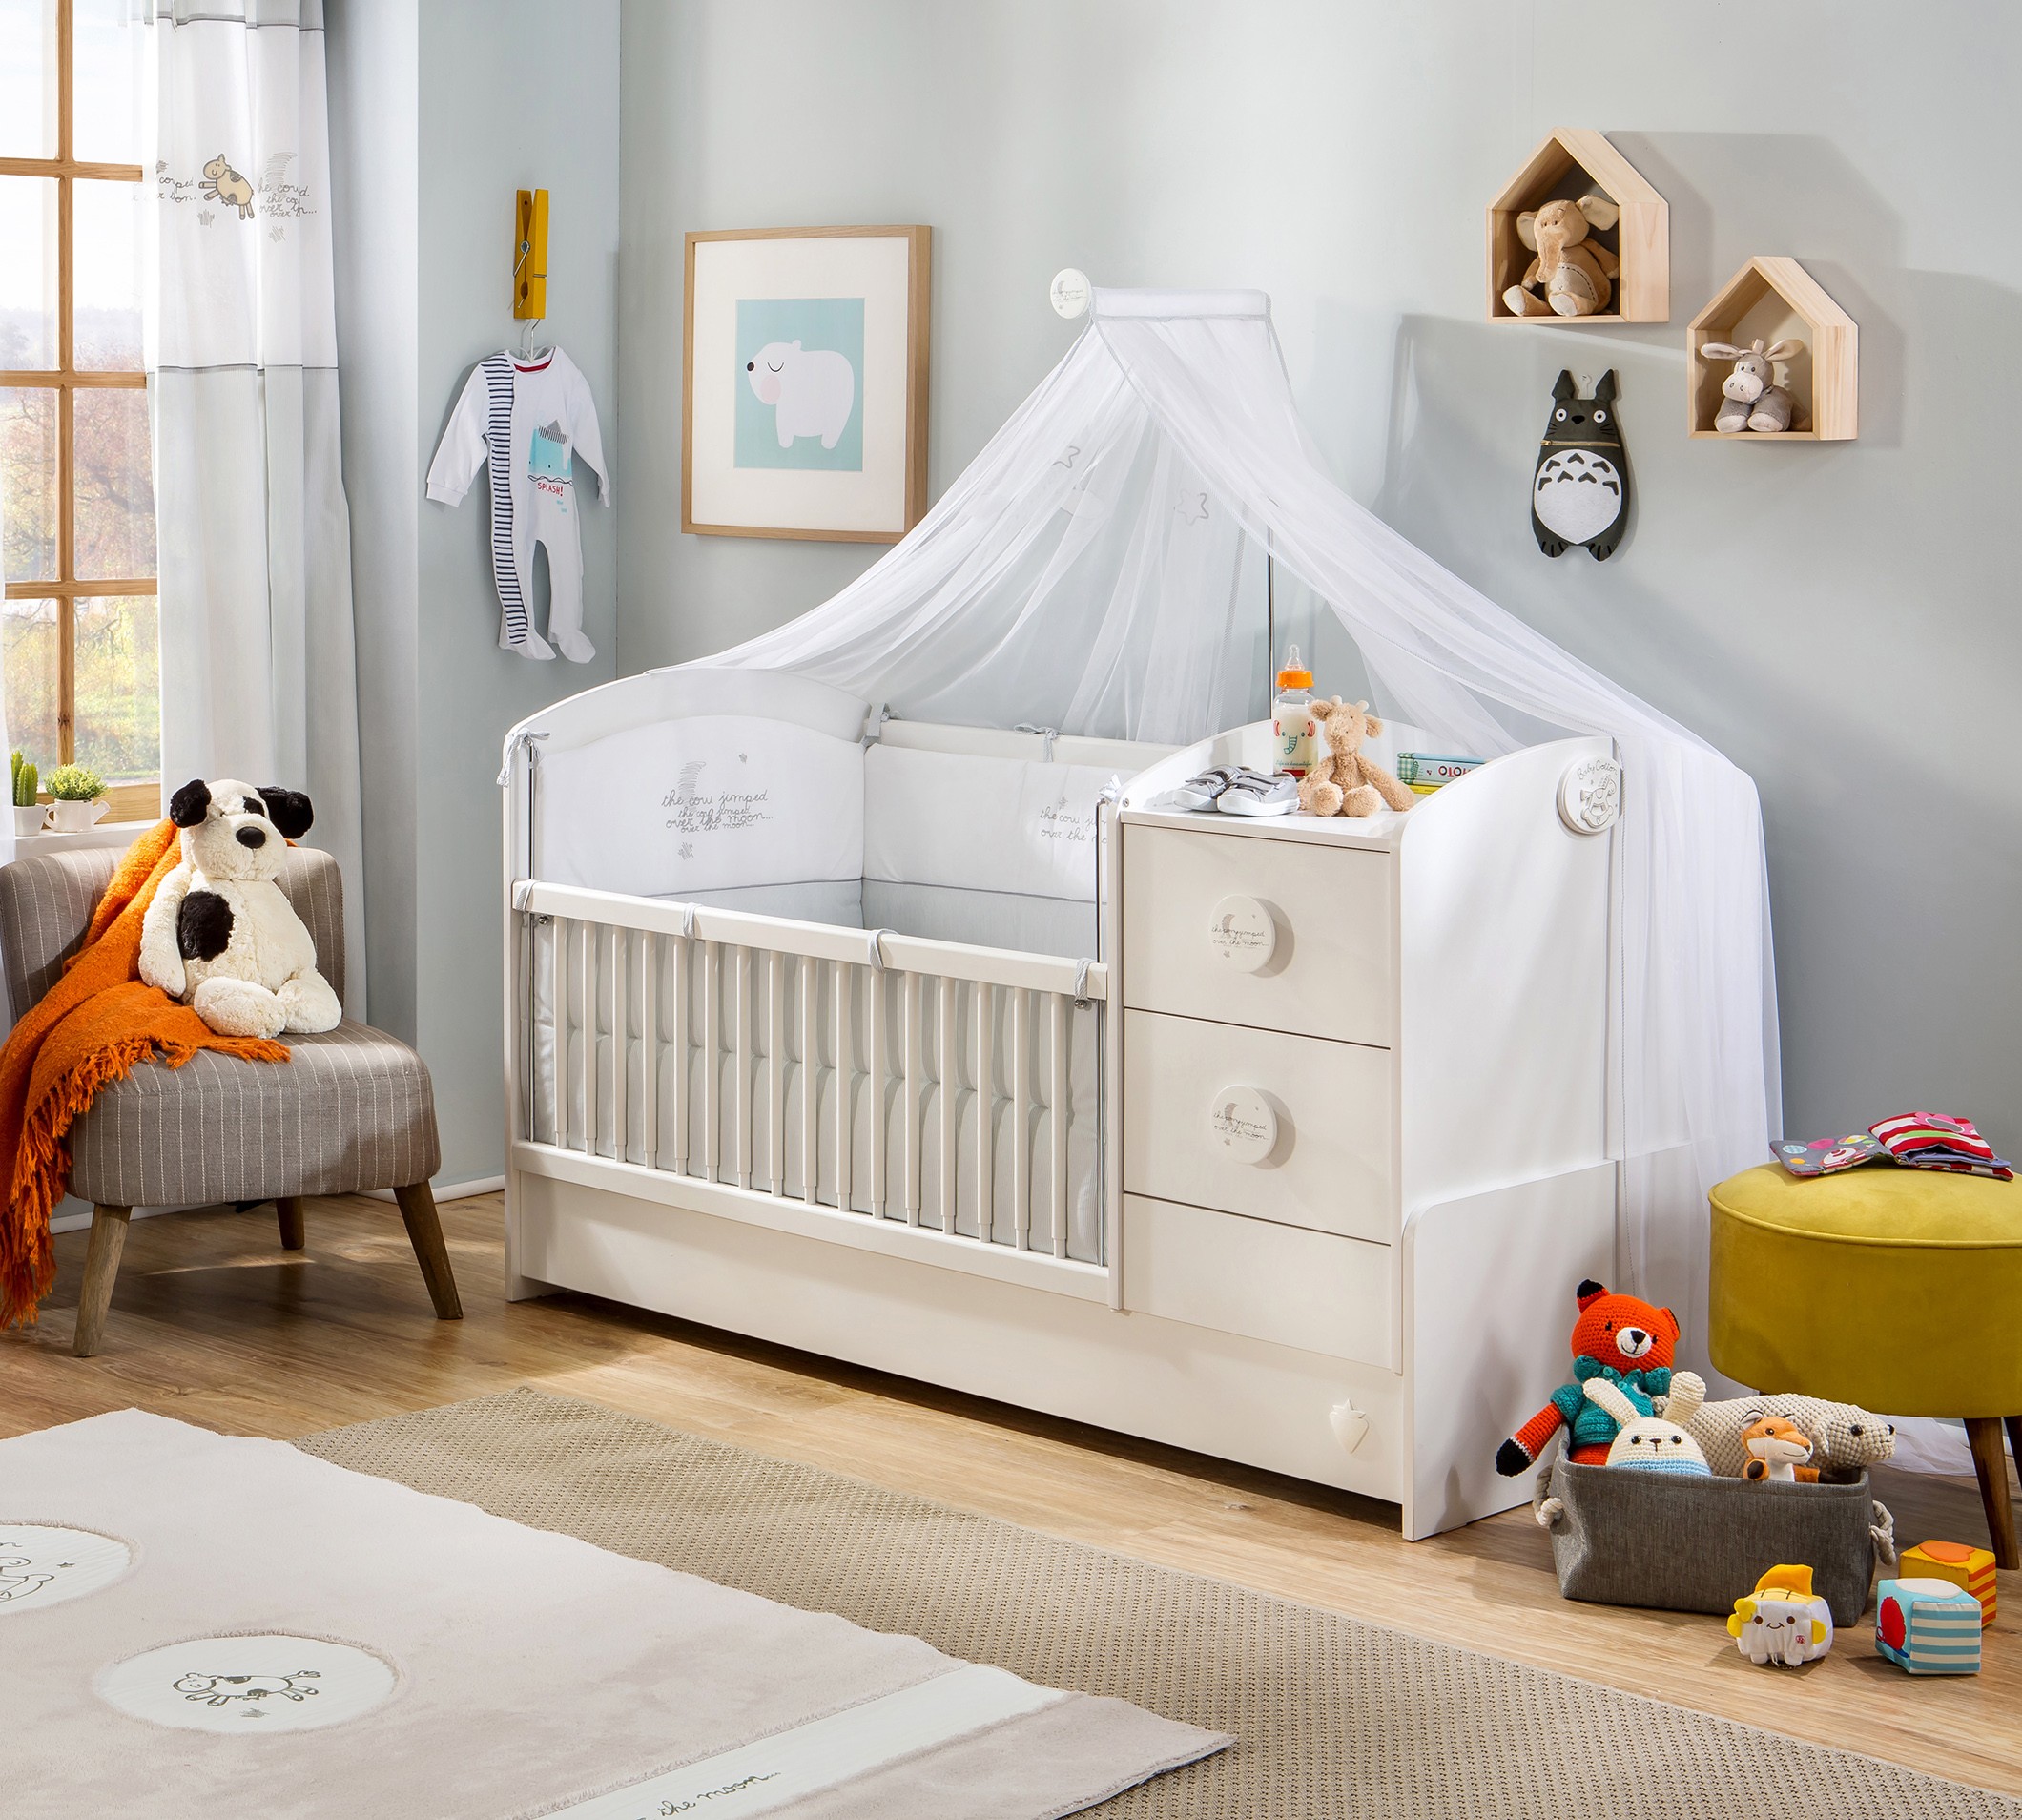 Как выбрать кроватку для малыша?